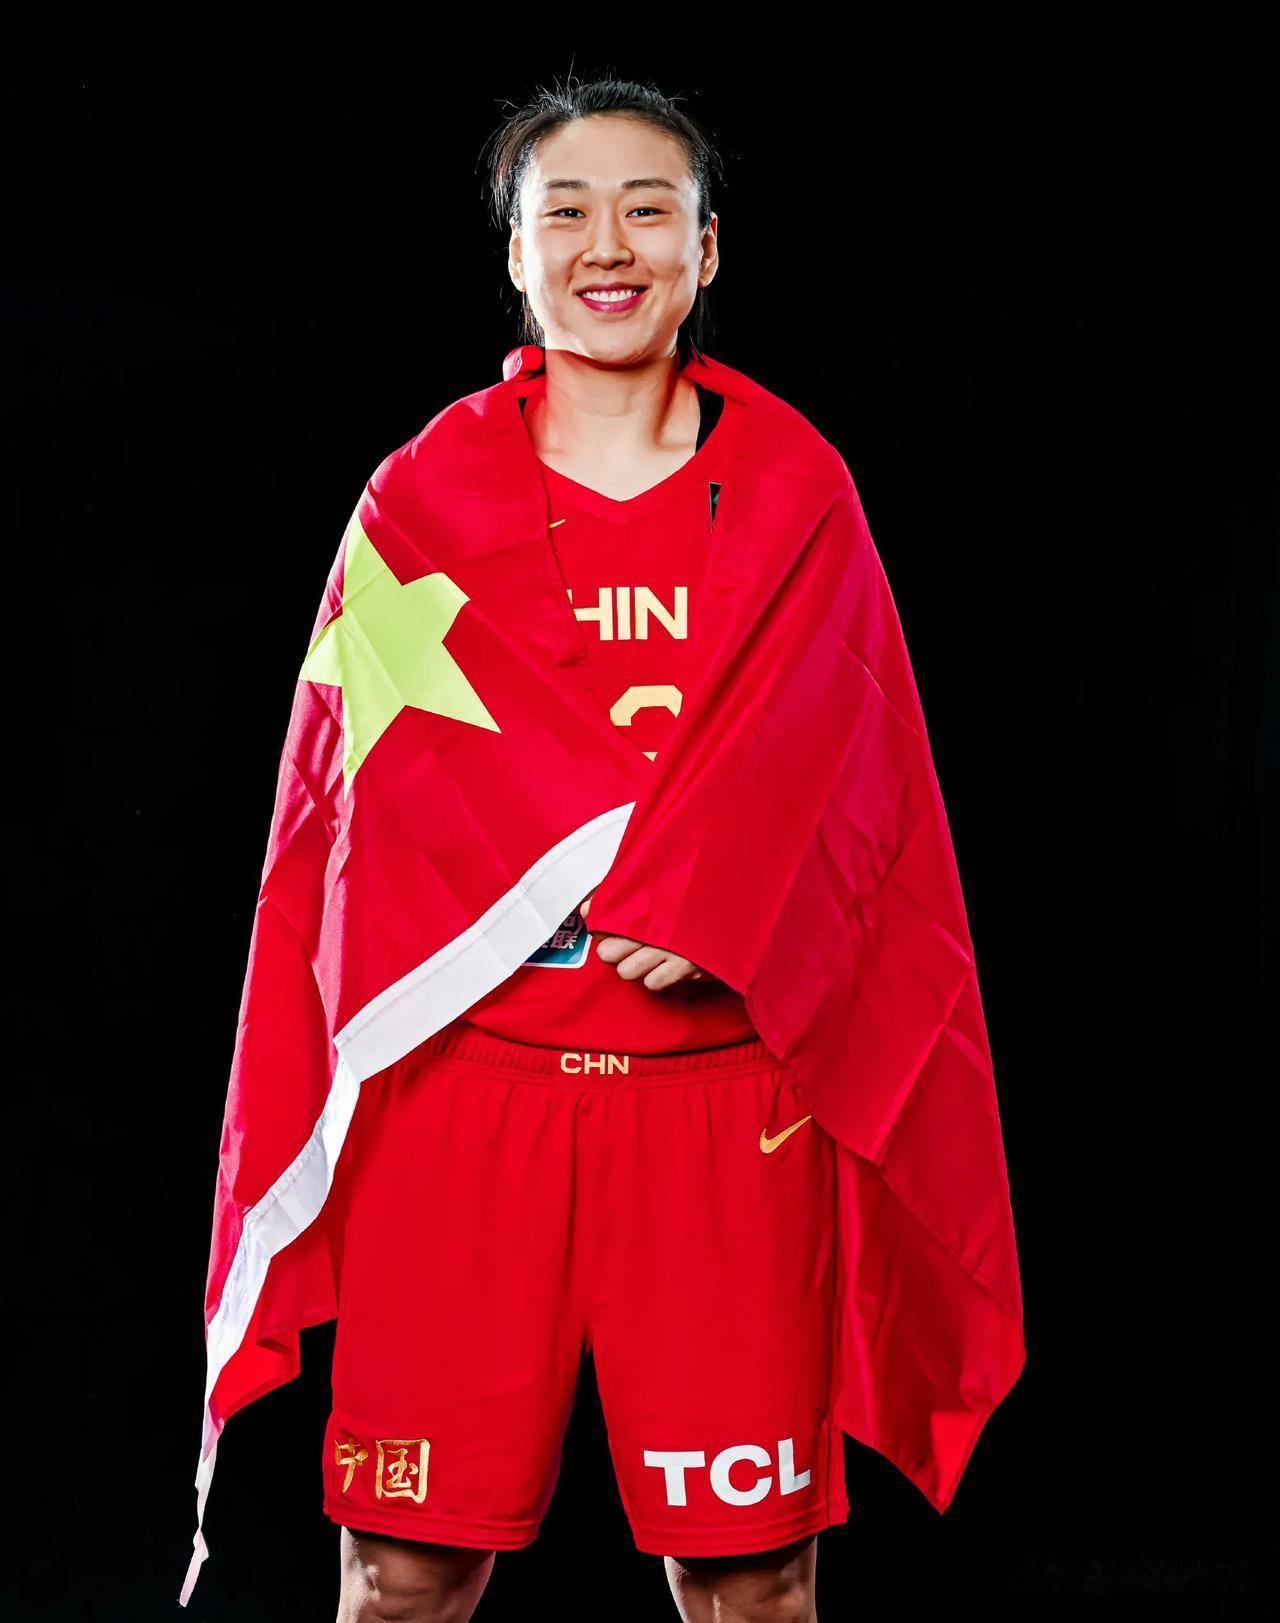 中国女篮
女篮亚洲杯倒计时1天，我心目中的预测首发阵容。
1、王思雨
2、杨力维(4)